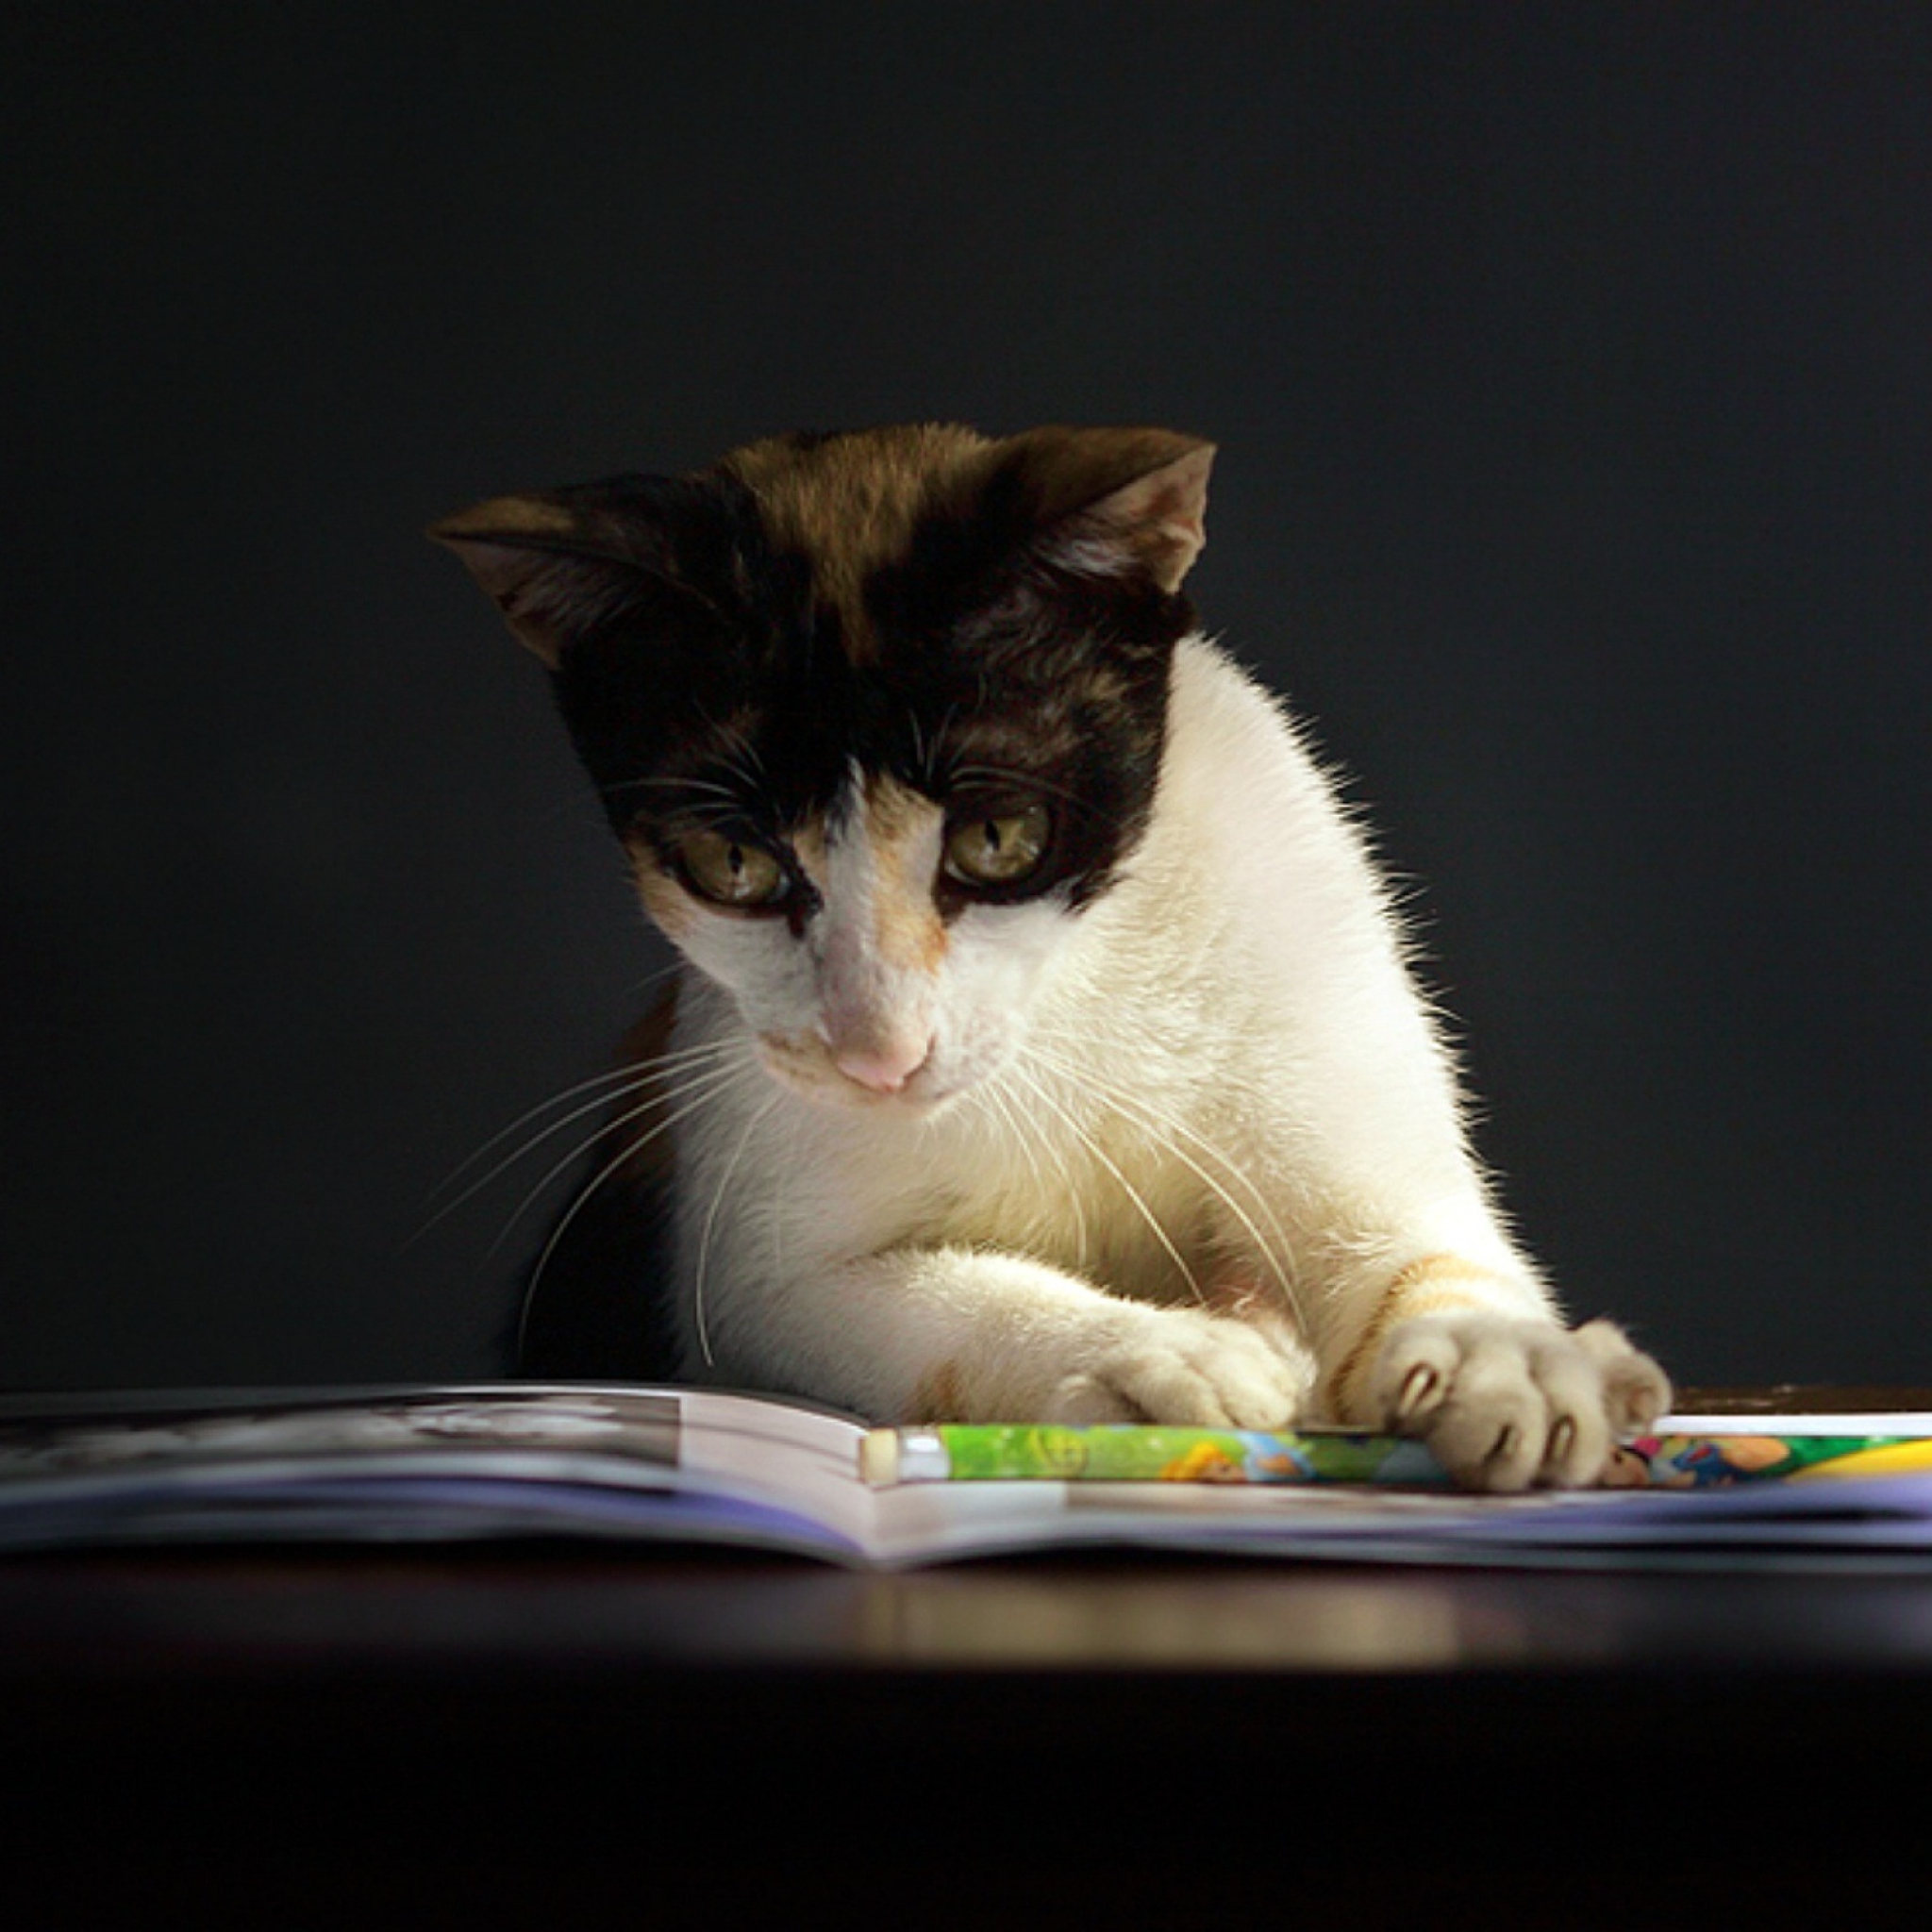 Das Cat Reading A Book Wallpaper 2048x2048